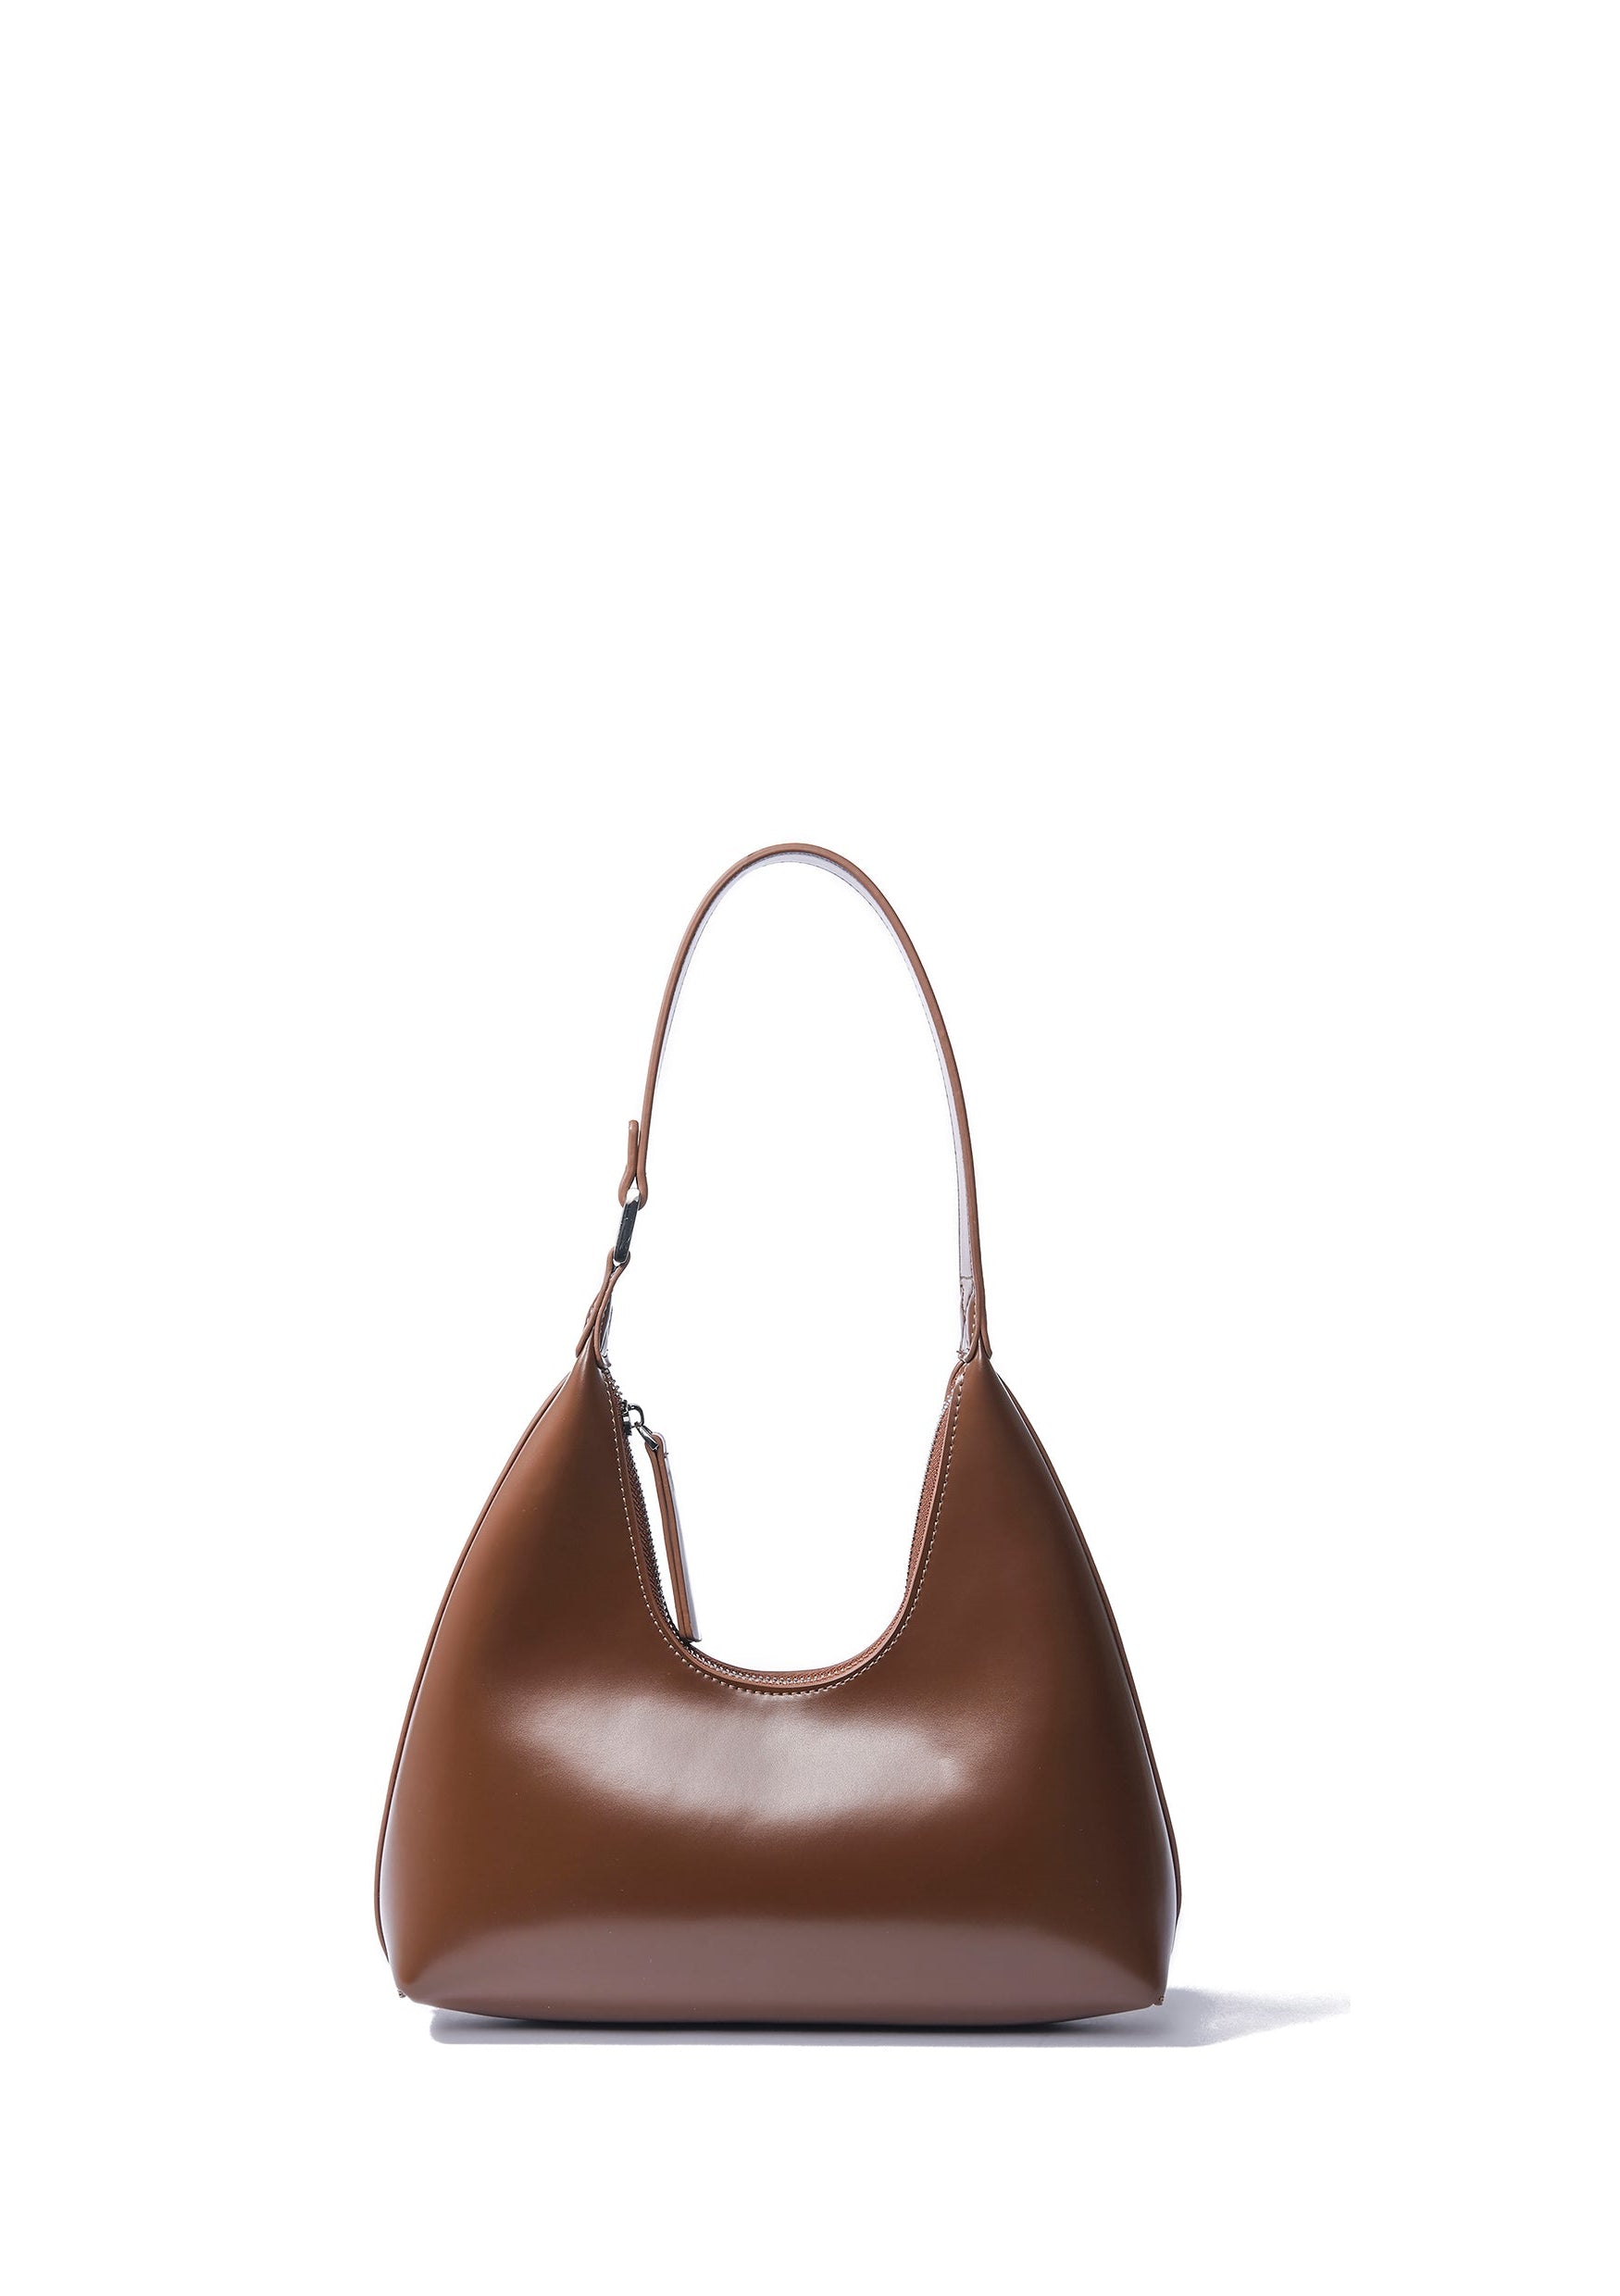 Alexia Bag in Smooth Leather, Caramel Bob Oré